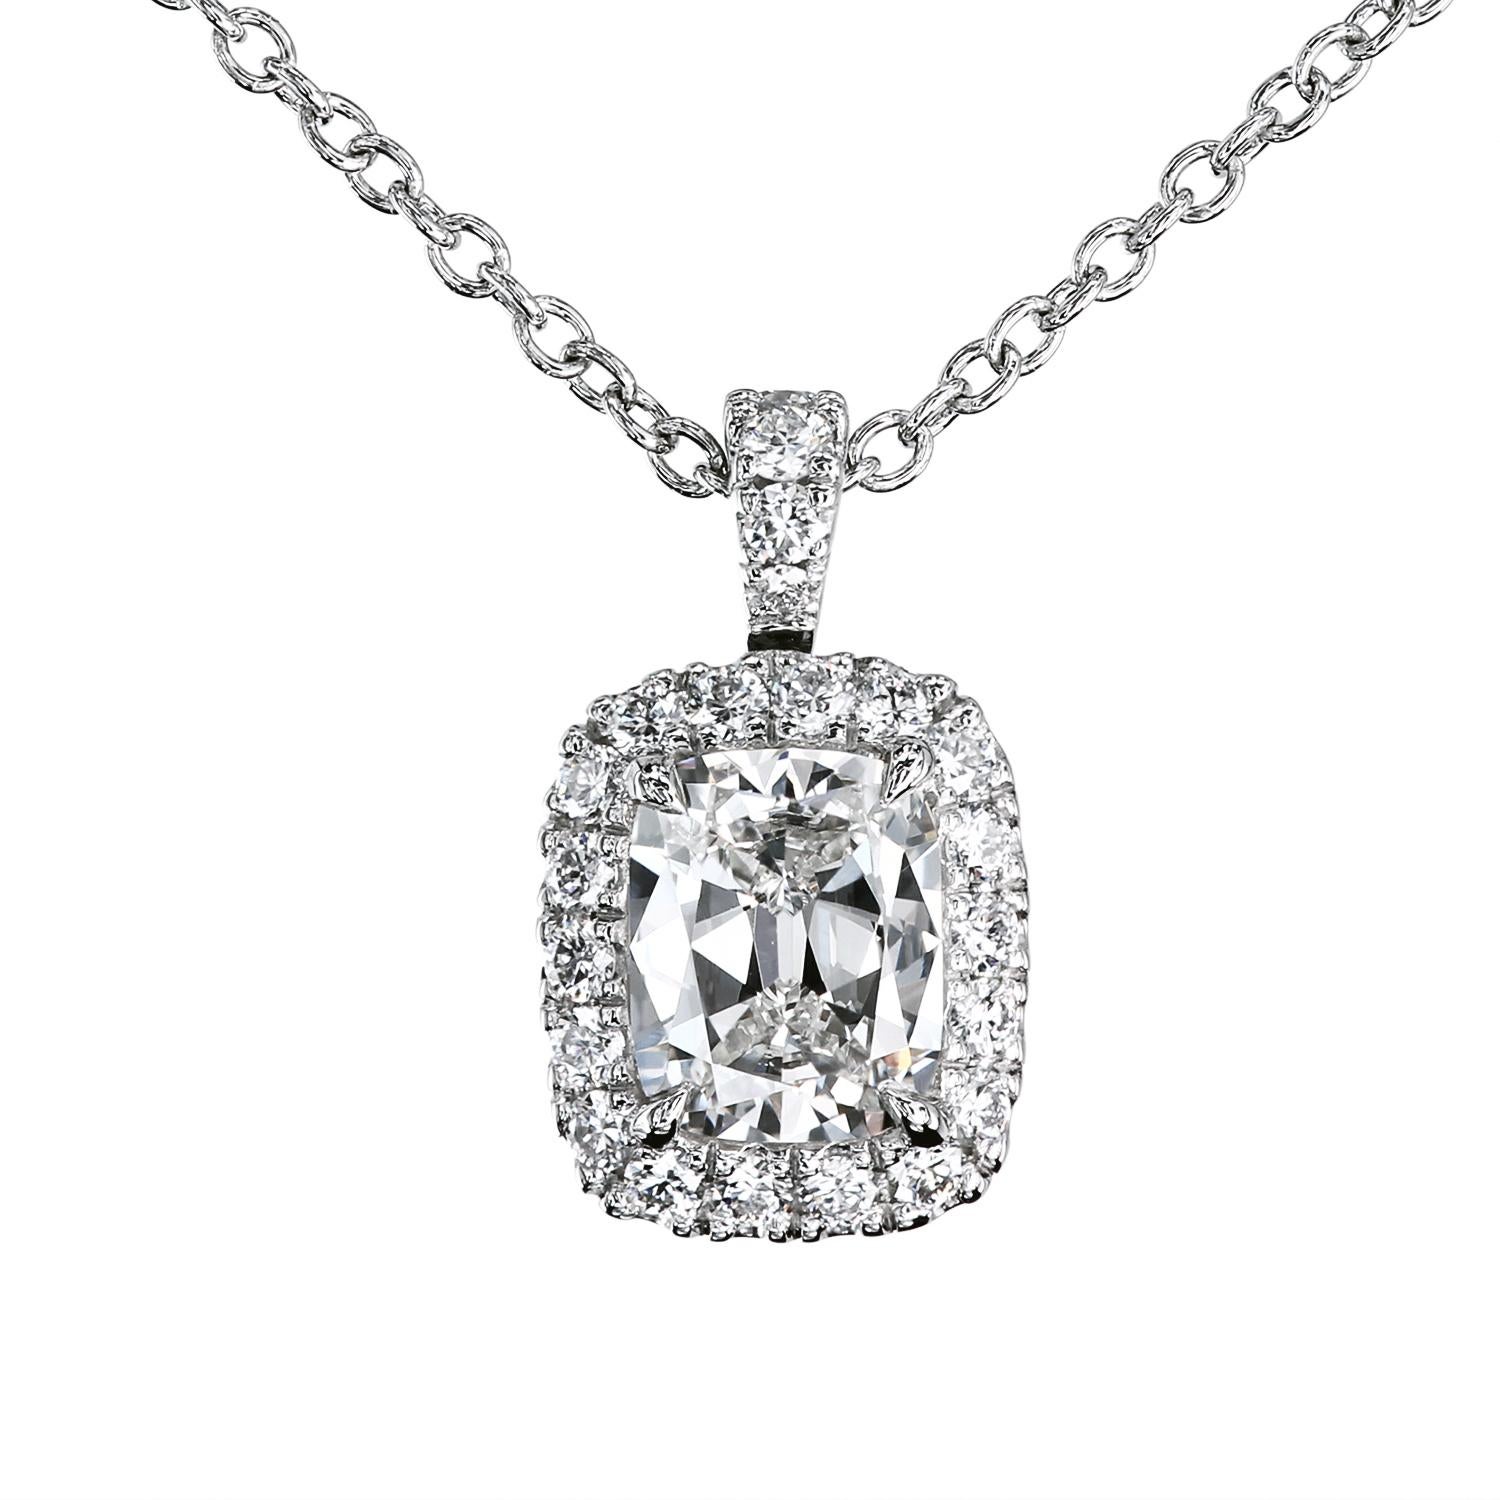 Diamant certifié GIA de 0,70 carat D/SI1 Diamant coussin antique entouré de microdiamants pavés dans un délicat pendentif fabriqué à l'établi par Leon Mege.
Certificat GIA #2165647209
Le pendentif est doté d'une attache à charnière qui permet un